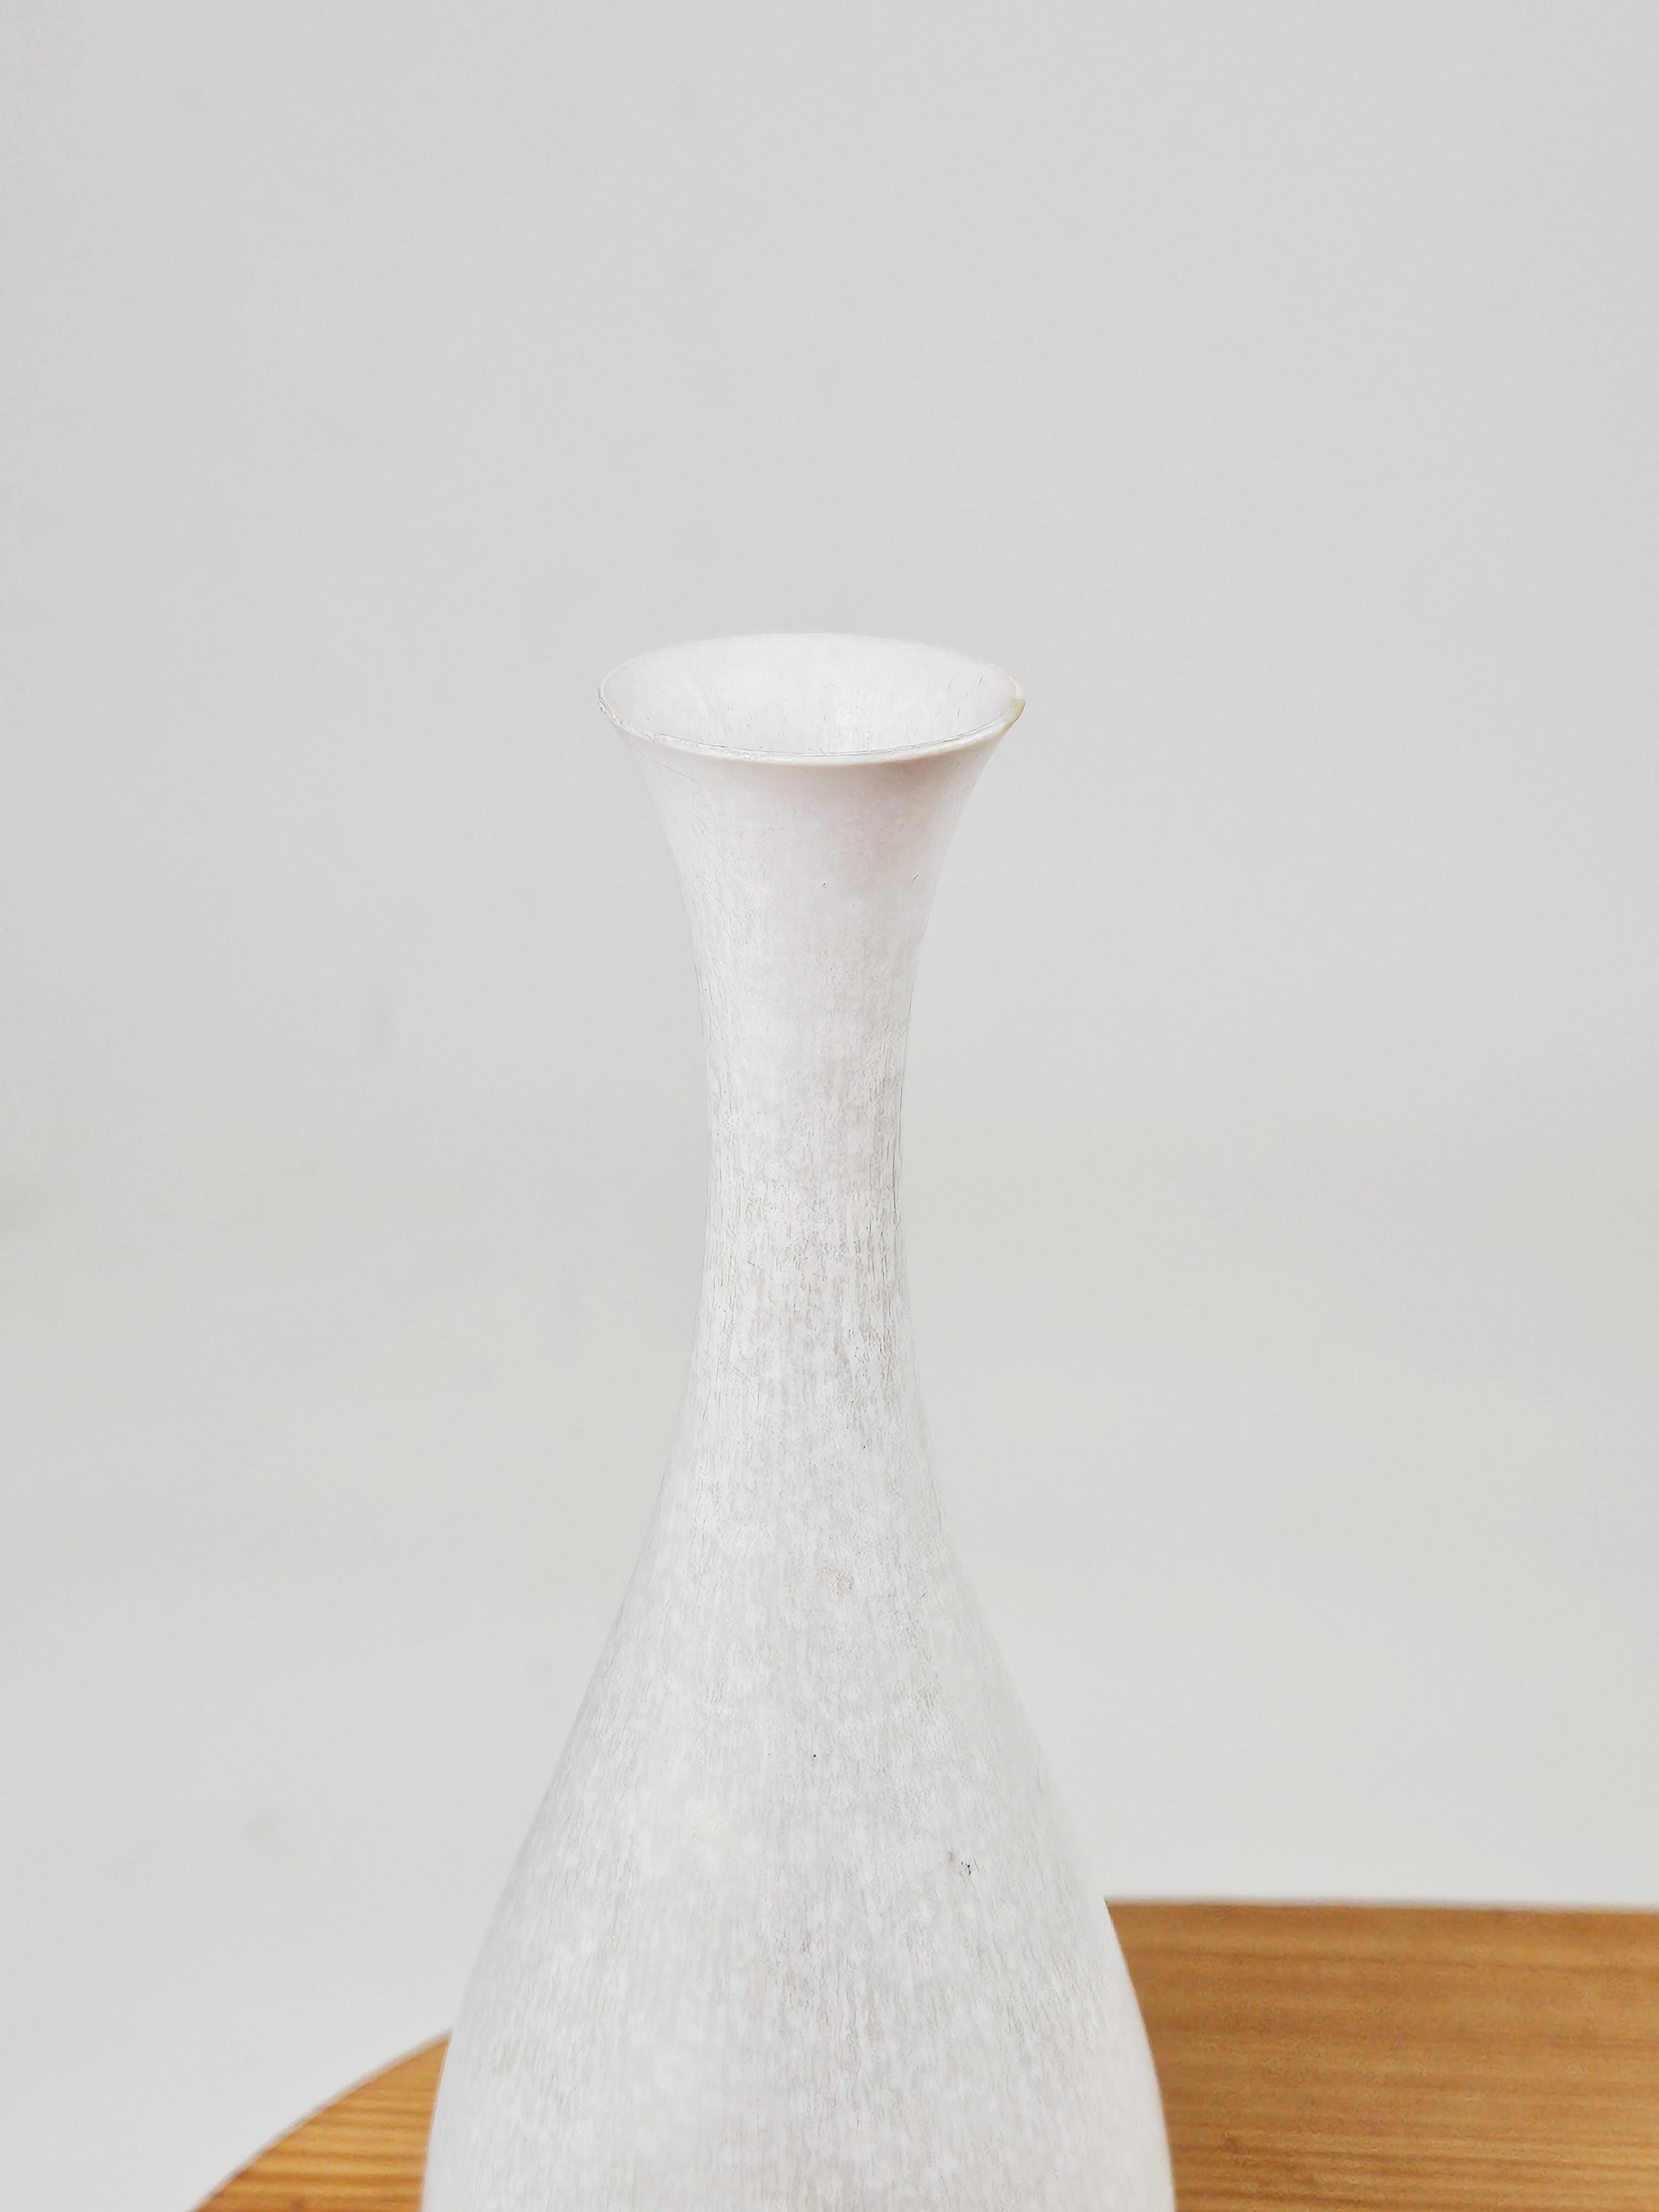 Stoneware White stoneware vase by Carl-Harry Stålhane for Rörstrand, Sweden, 1960s For Sale